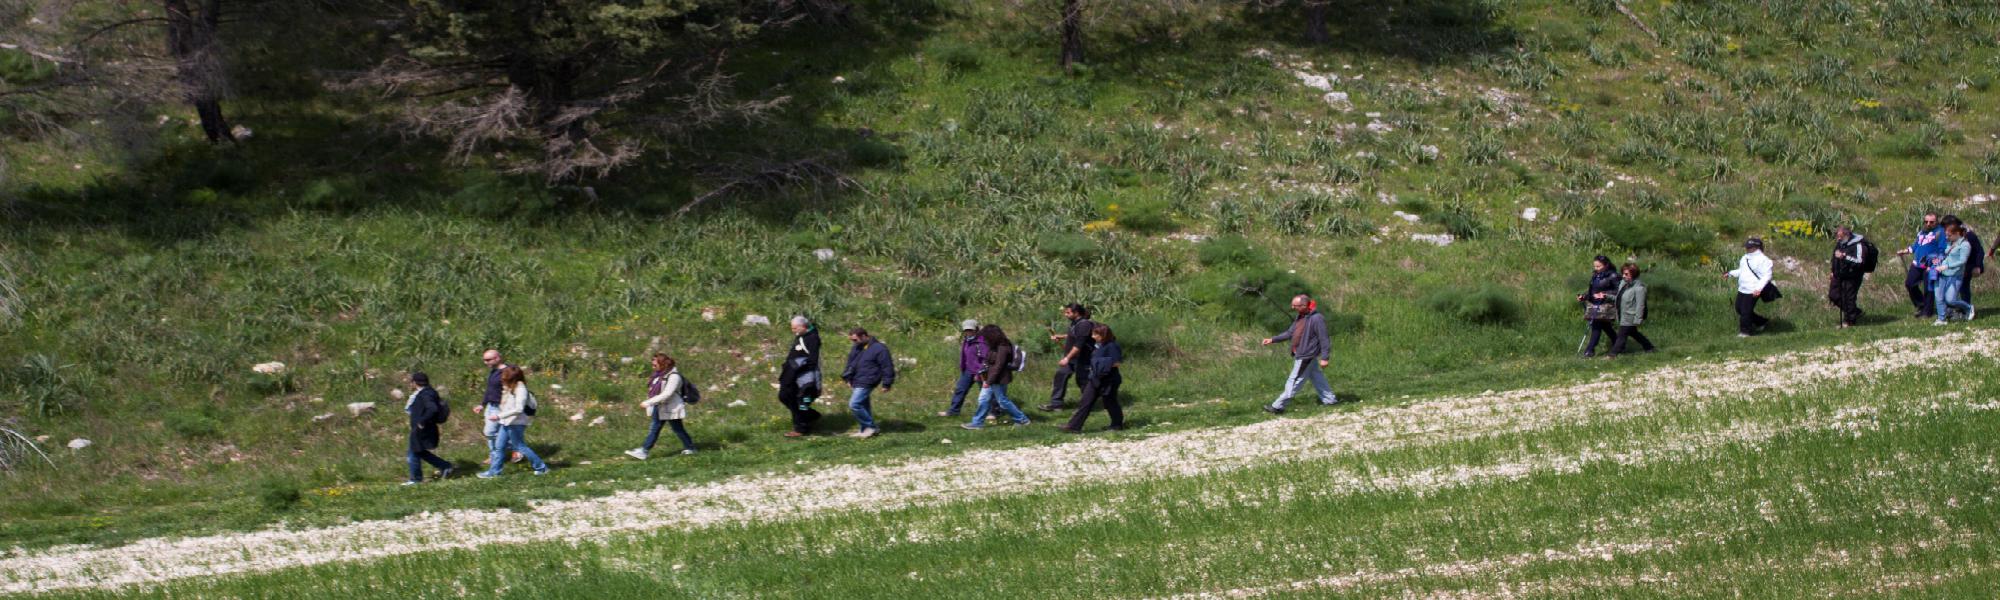 Wandern und Spaziergänge in der Natur in Ostuni in Apulien - Agriturismo Salinola 0